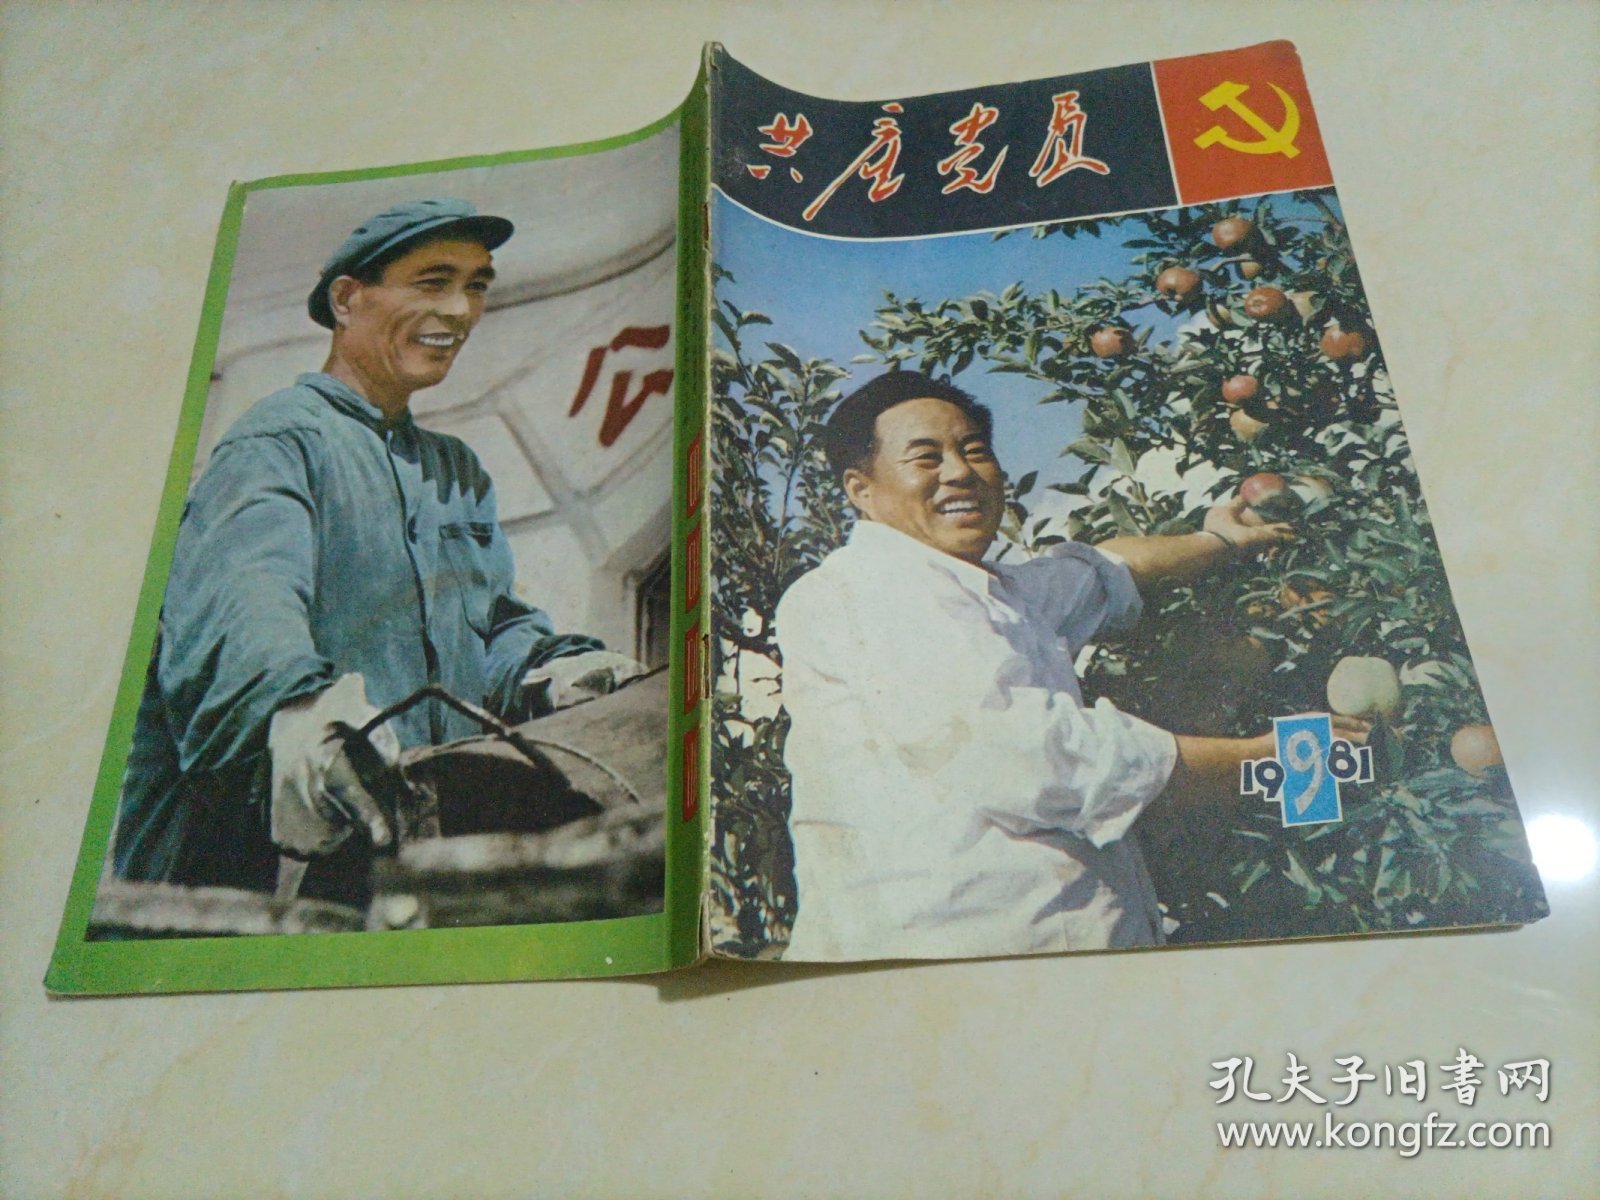 共产党员（1981年第9期）【另有其它年份出让，欢迎选购】